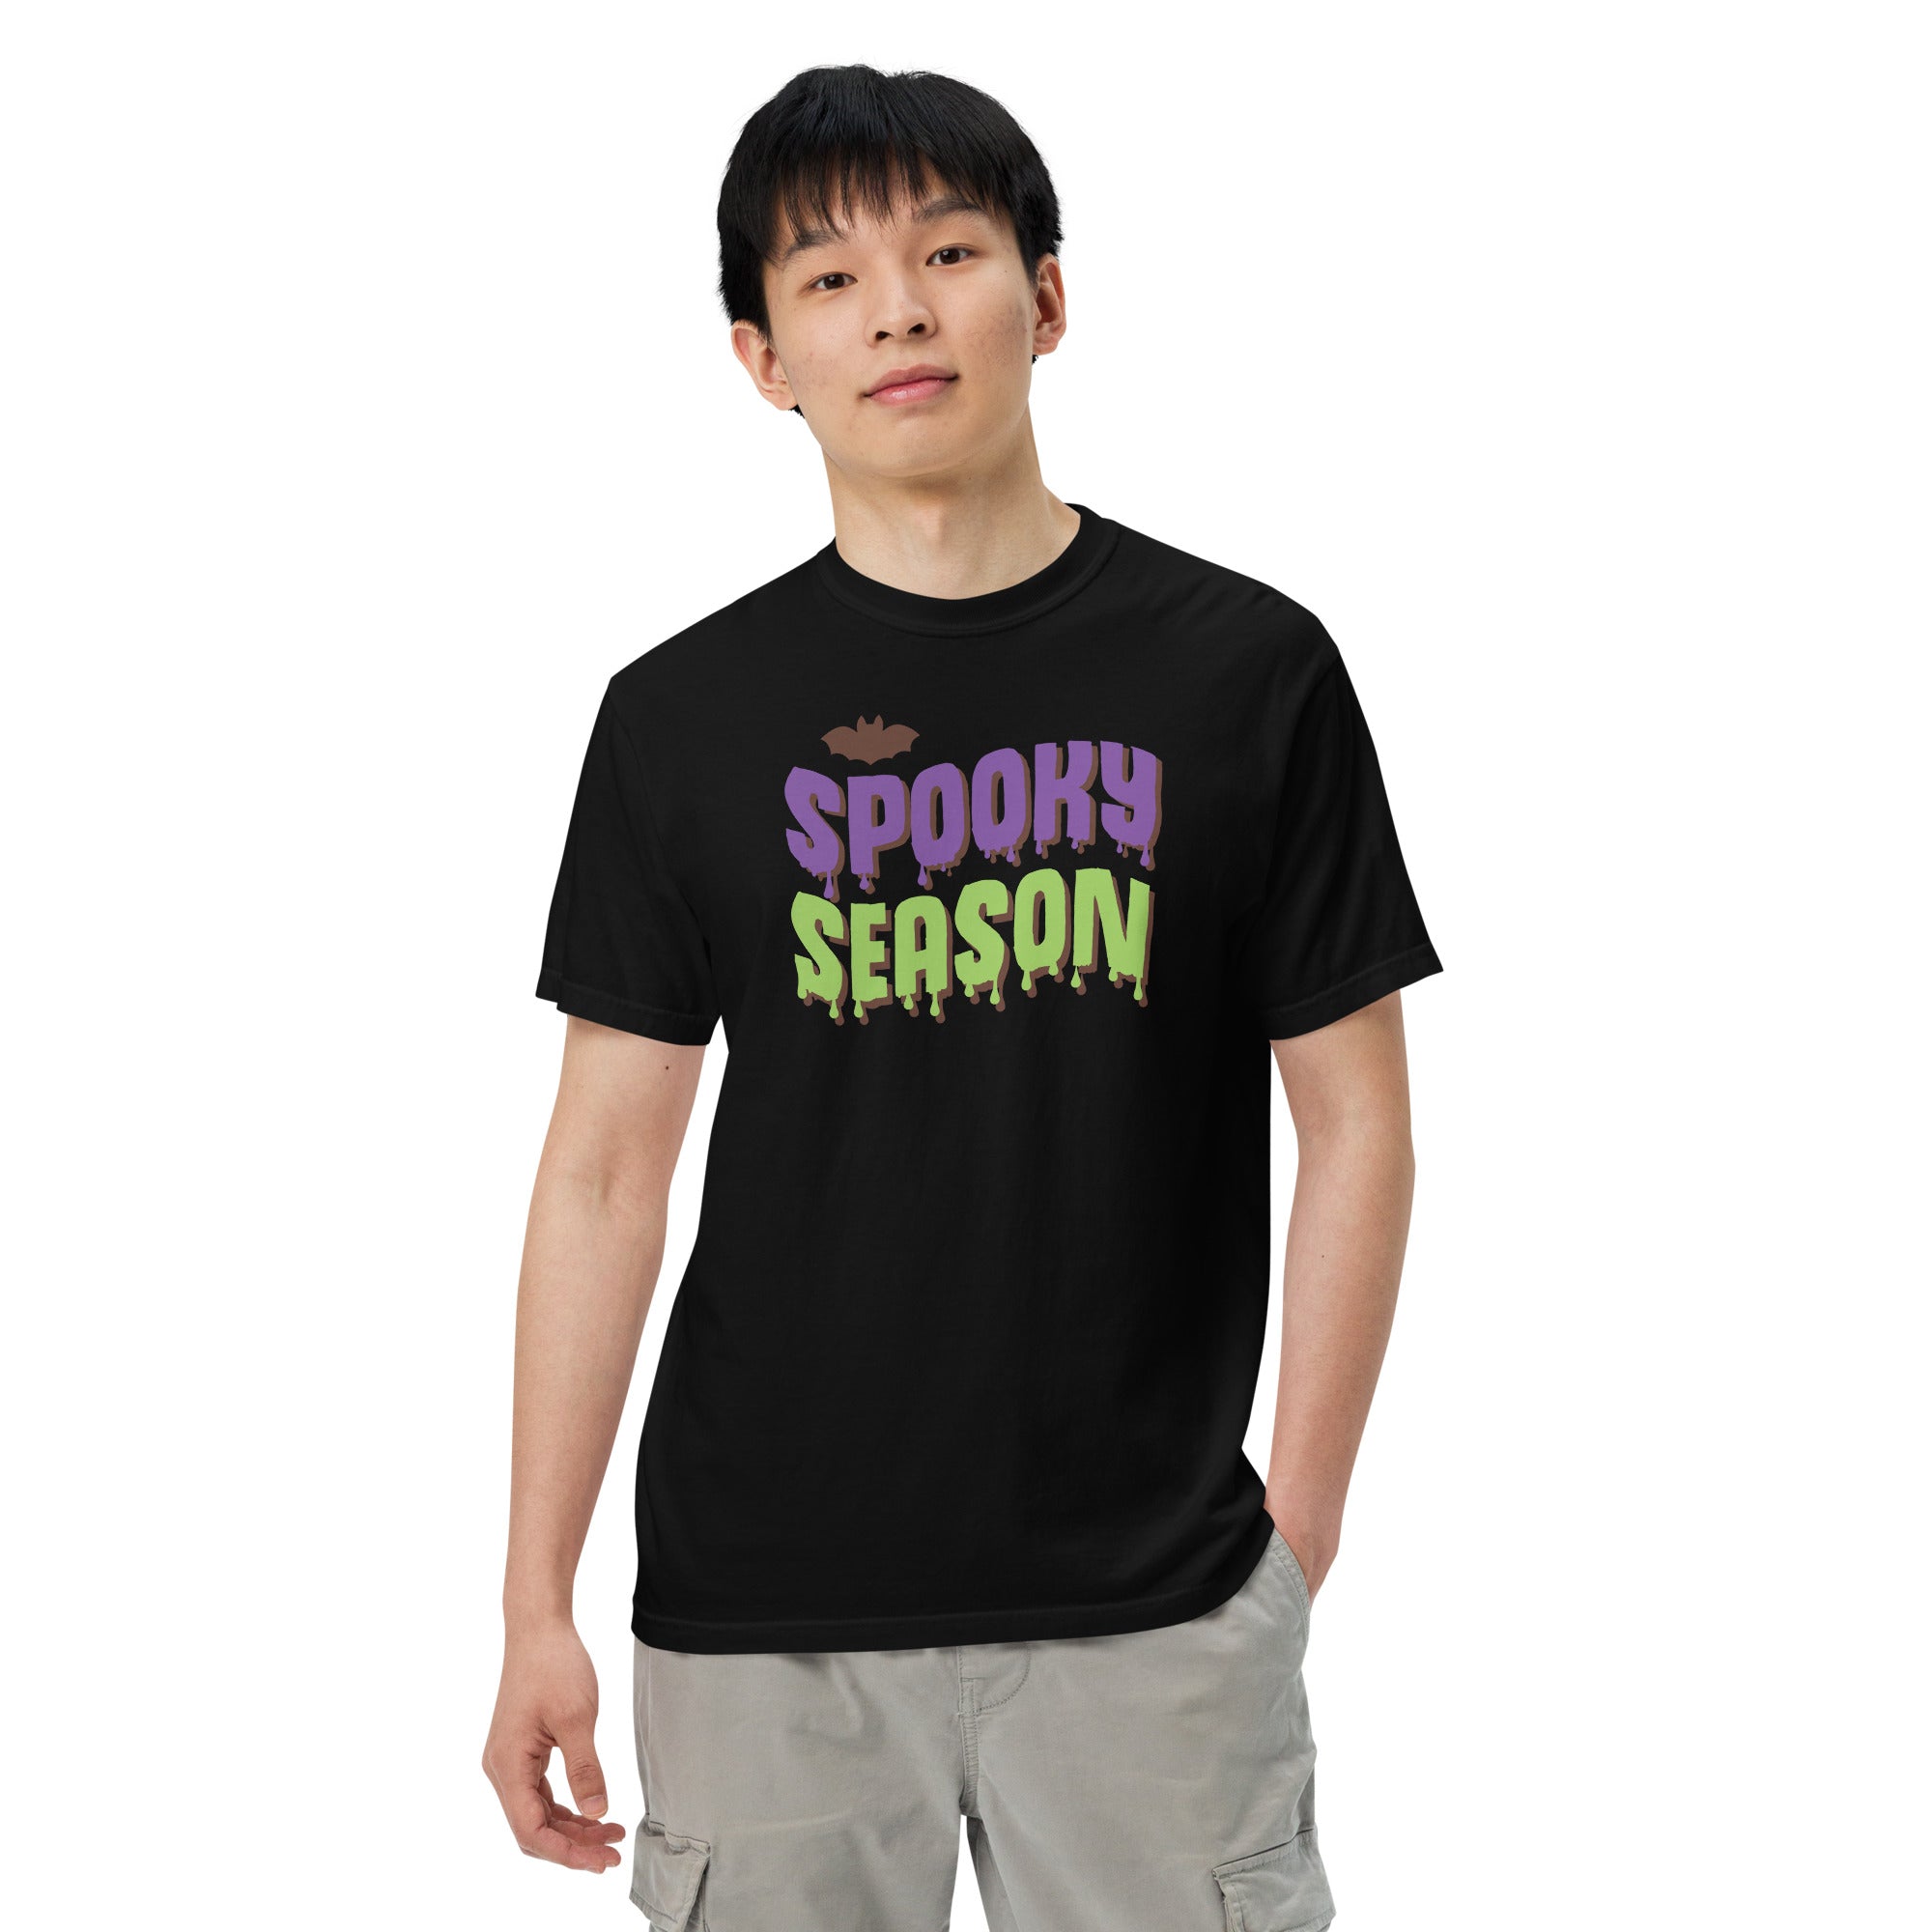 Spooky Season Shirt,Fall Shirt, Spooky Season Halloween Shirt, Halloween T-shirt, Halloween vibes, Halloween Funny Gift Tee